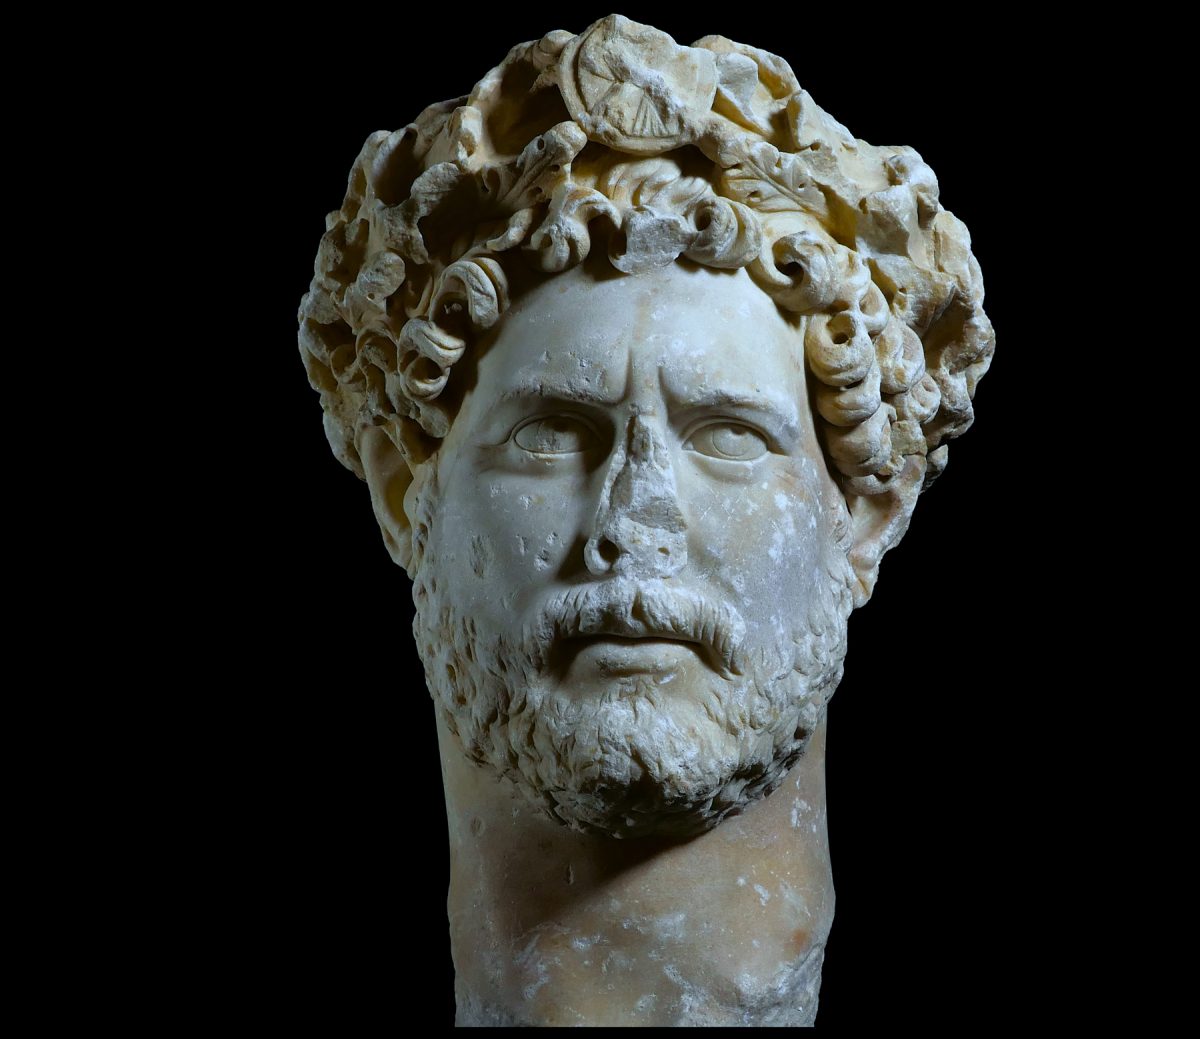 Πορτρέτο του αυτοκράτορα Αδριανού. Βρέθηκε στη λεωφόρο Συγγρού. Εθνικό Αρχαιολογικό Μουσείο (ΕΑΜ 3729), Αθήνα.